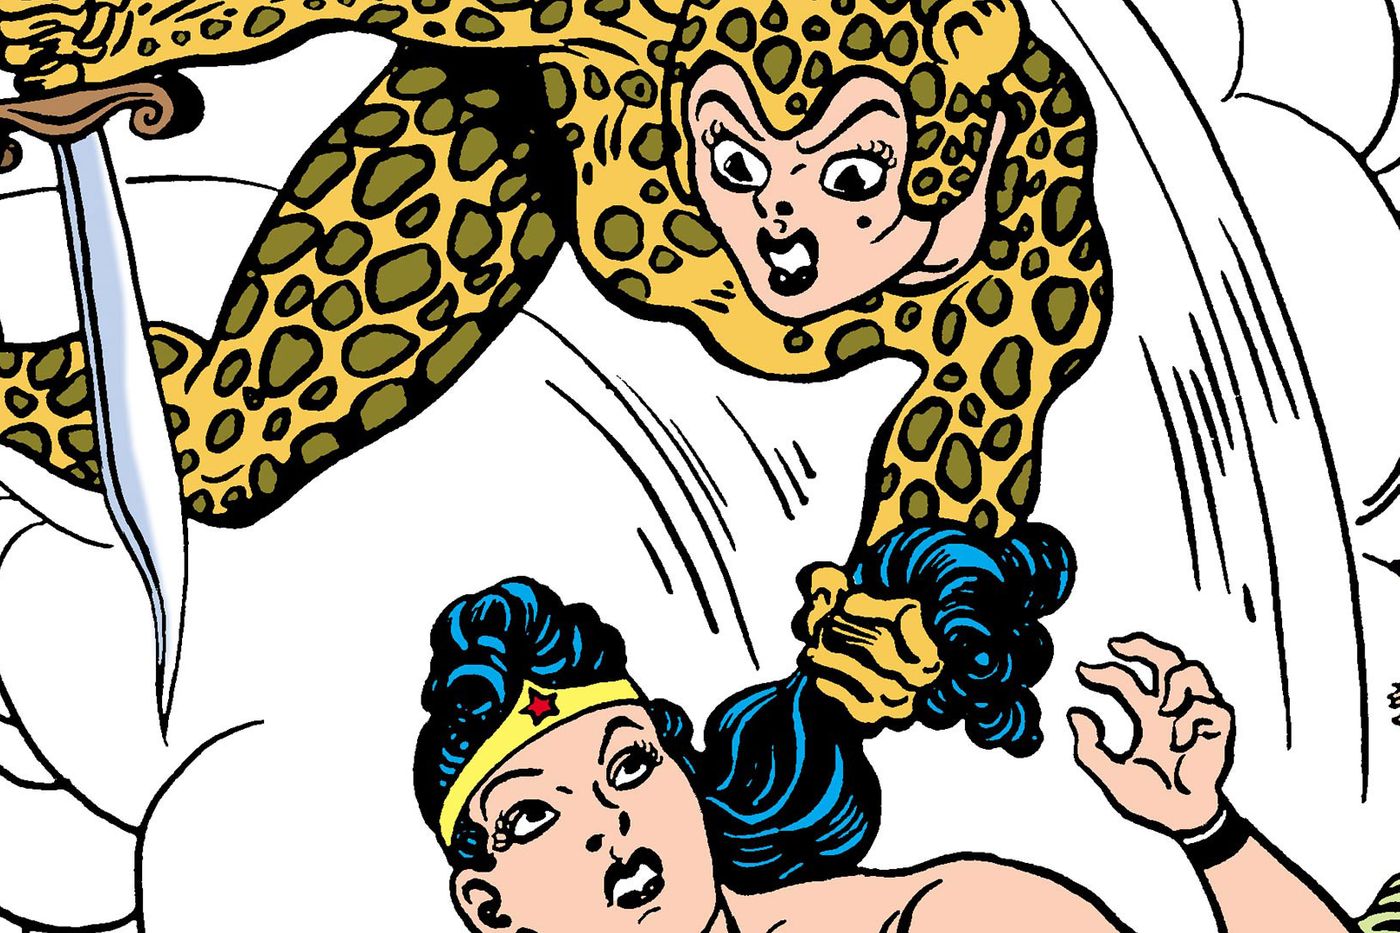 Wonder Woman Vs Cheetah Art Wallpapers